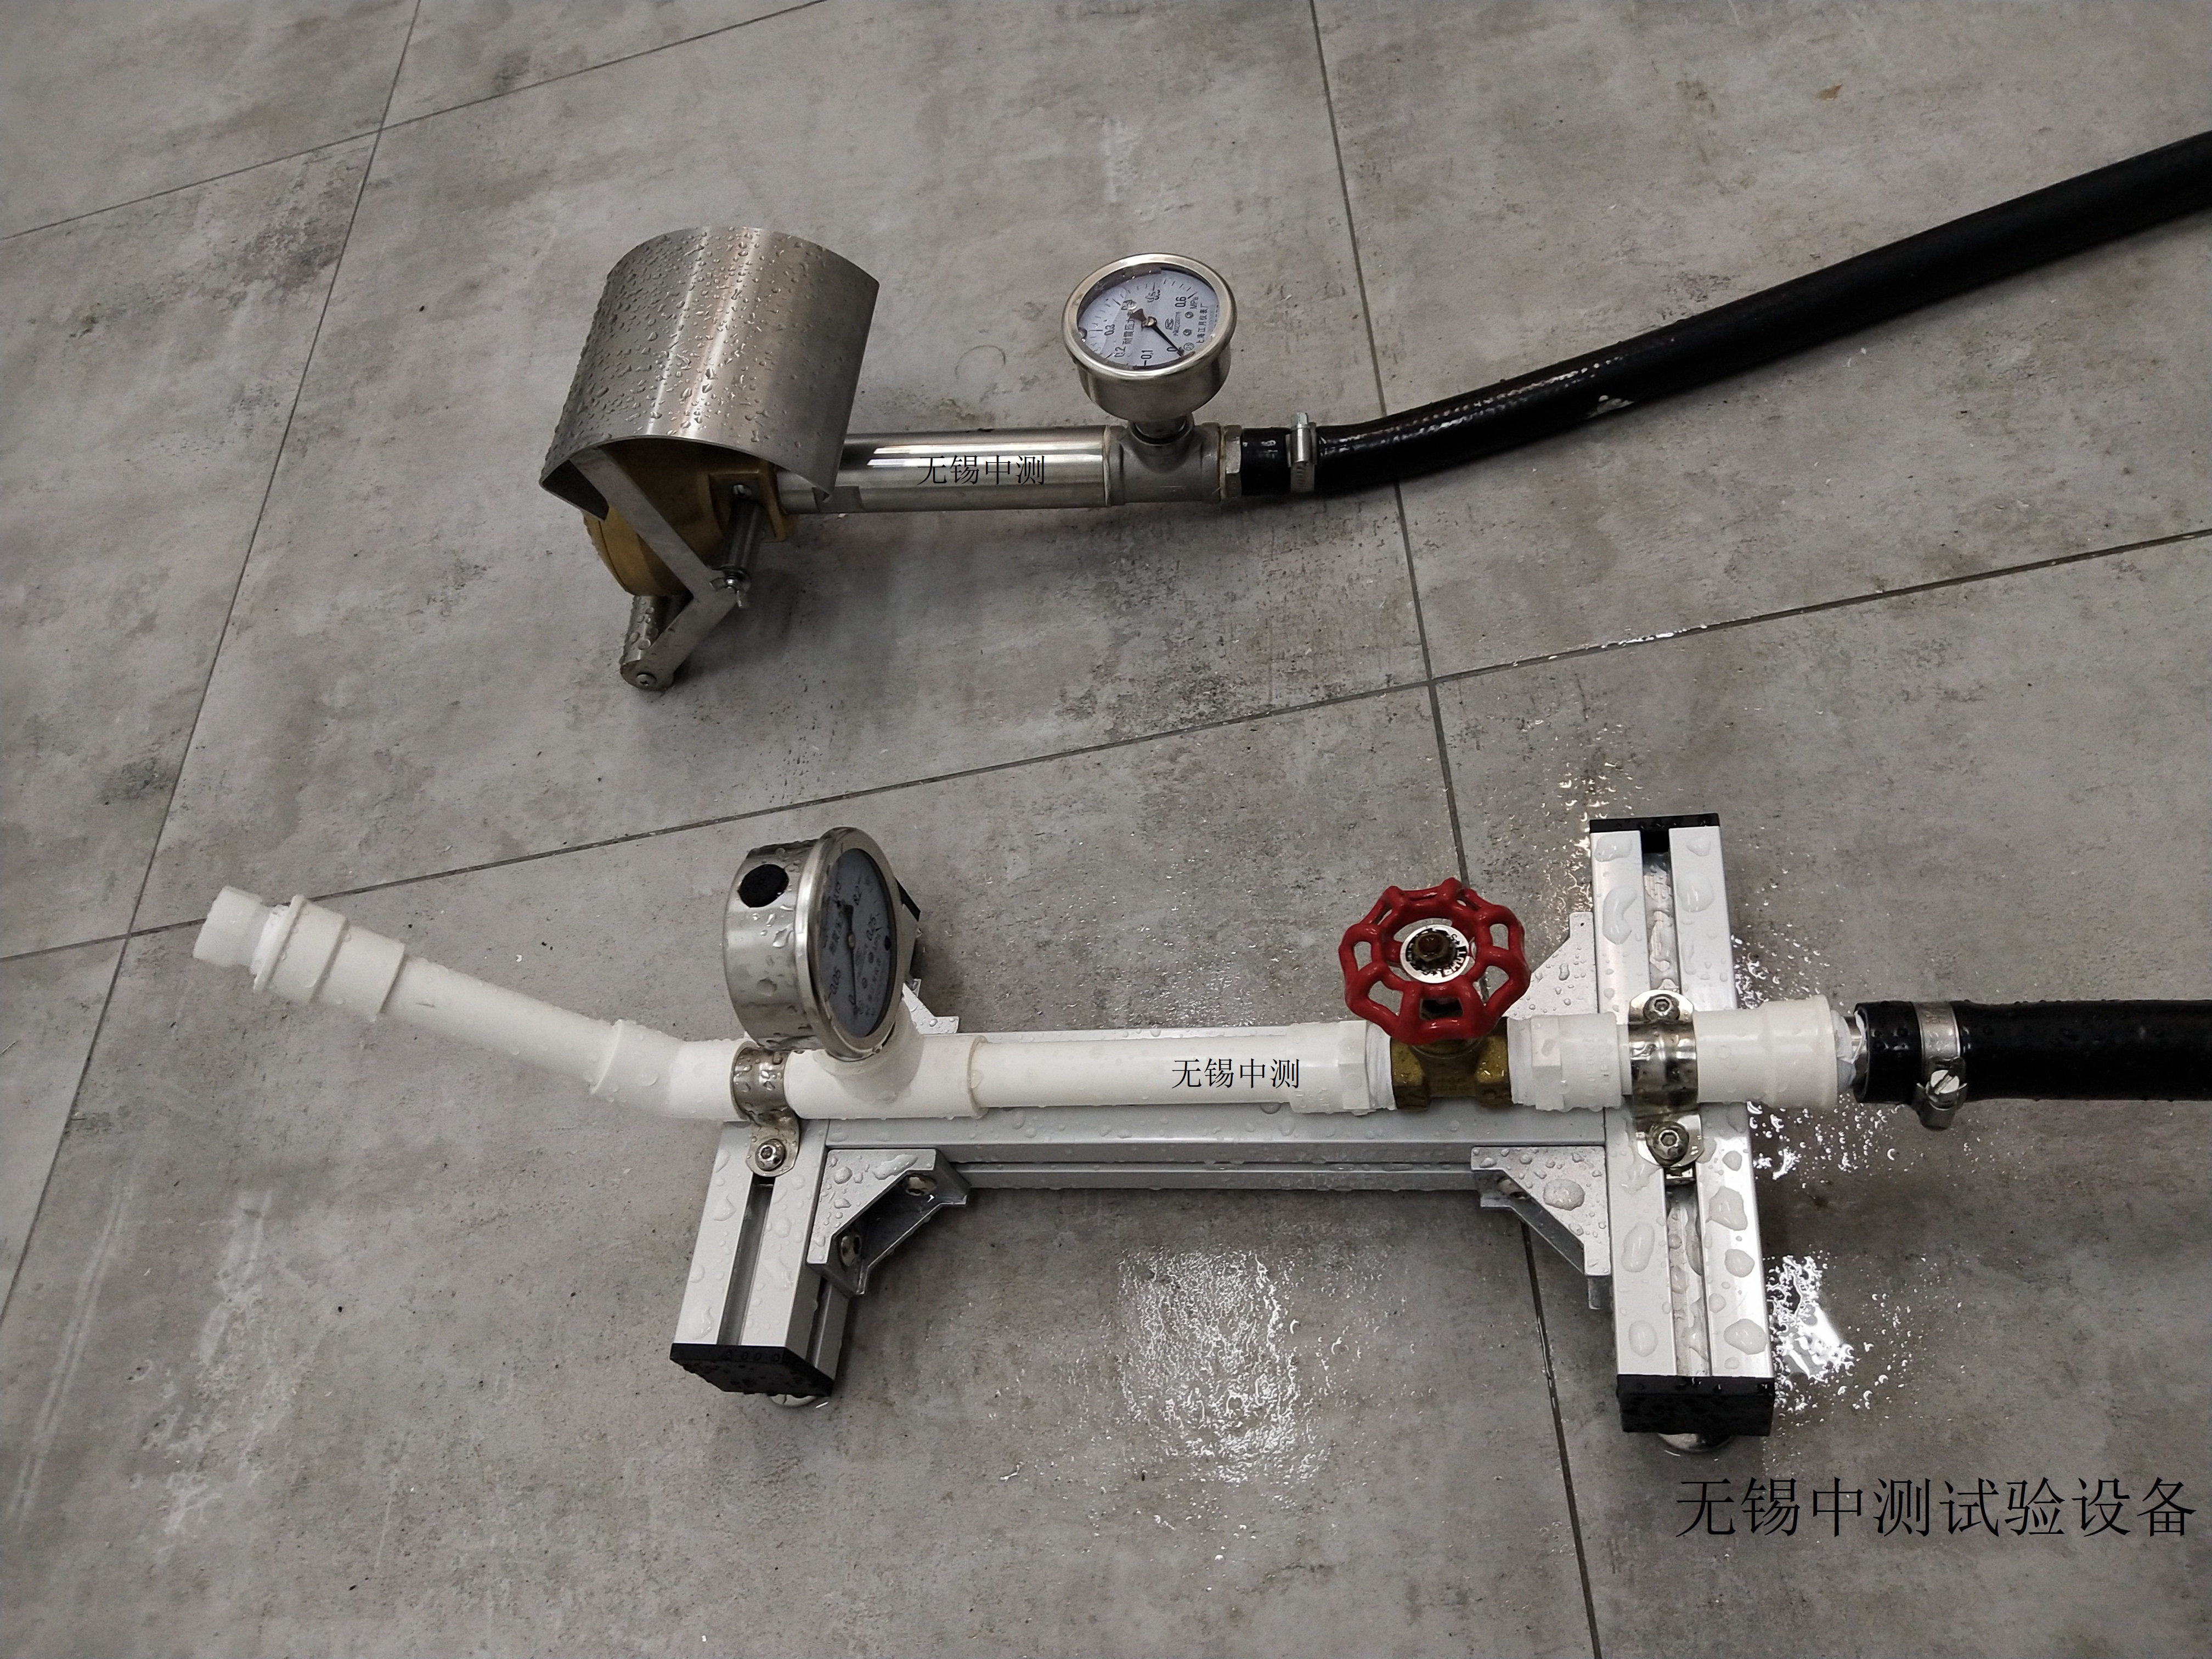 IP防水淋雨检测系统 ZC1200型IP防水试验机自动控制流量IP防水测试装置上门安装调试与培训